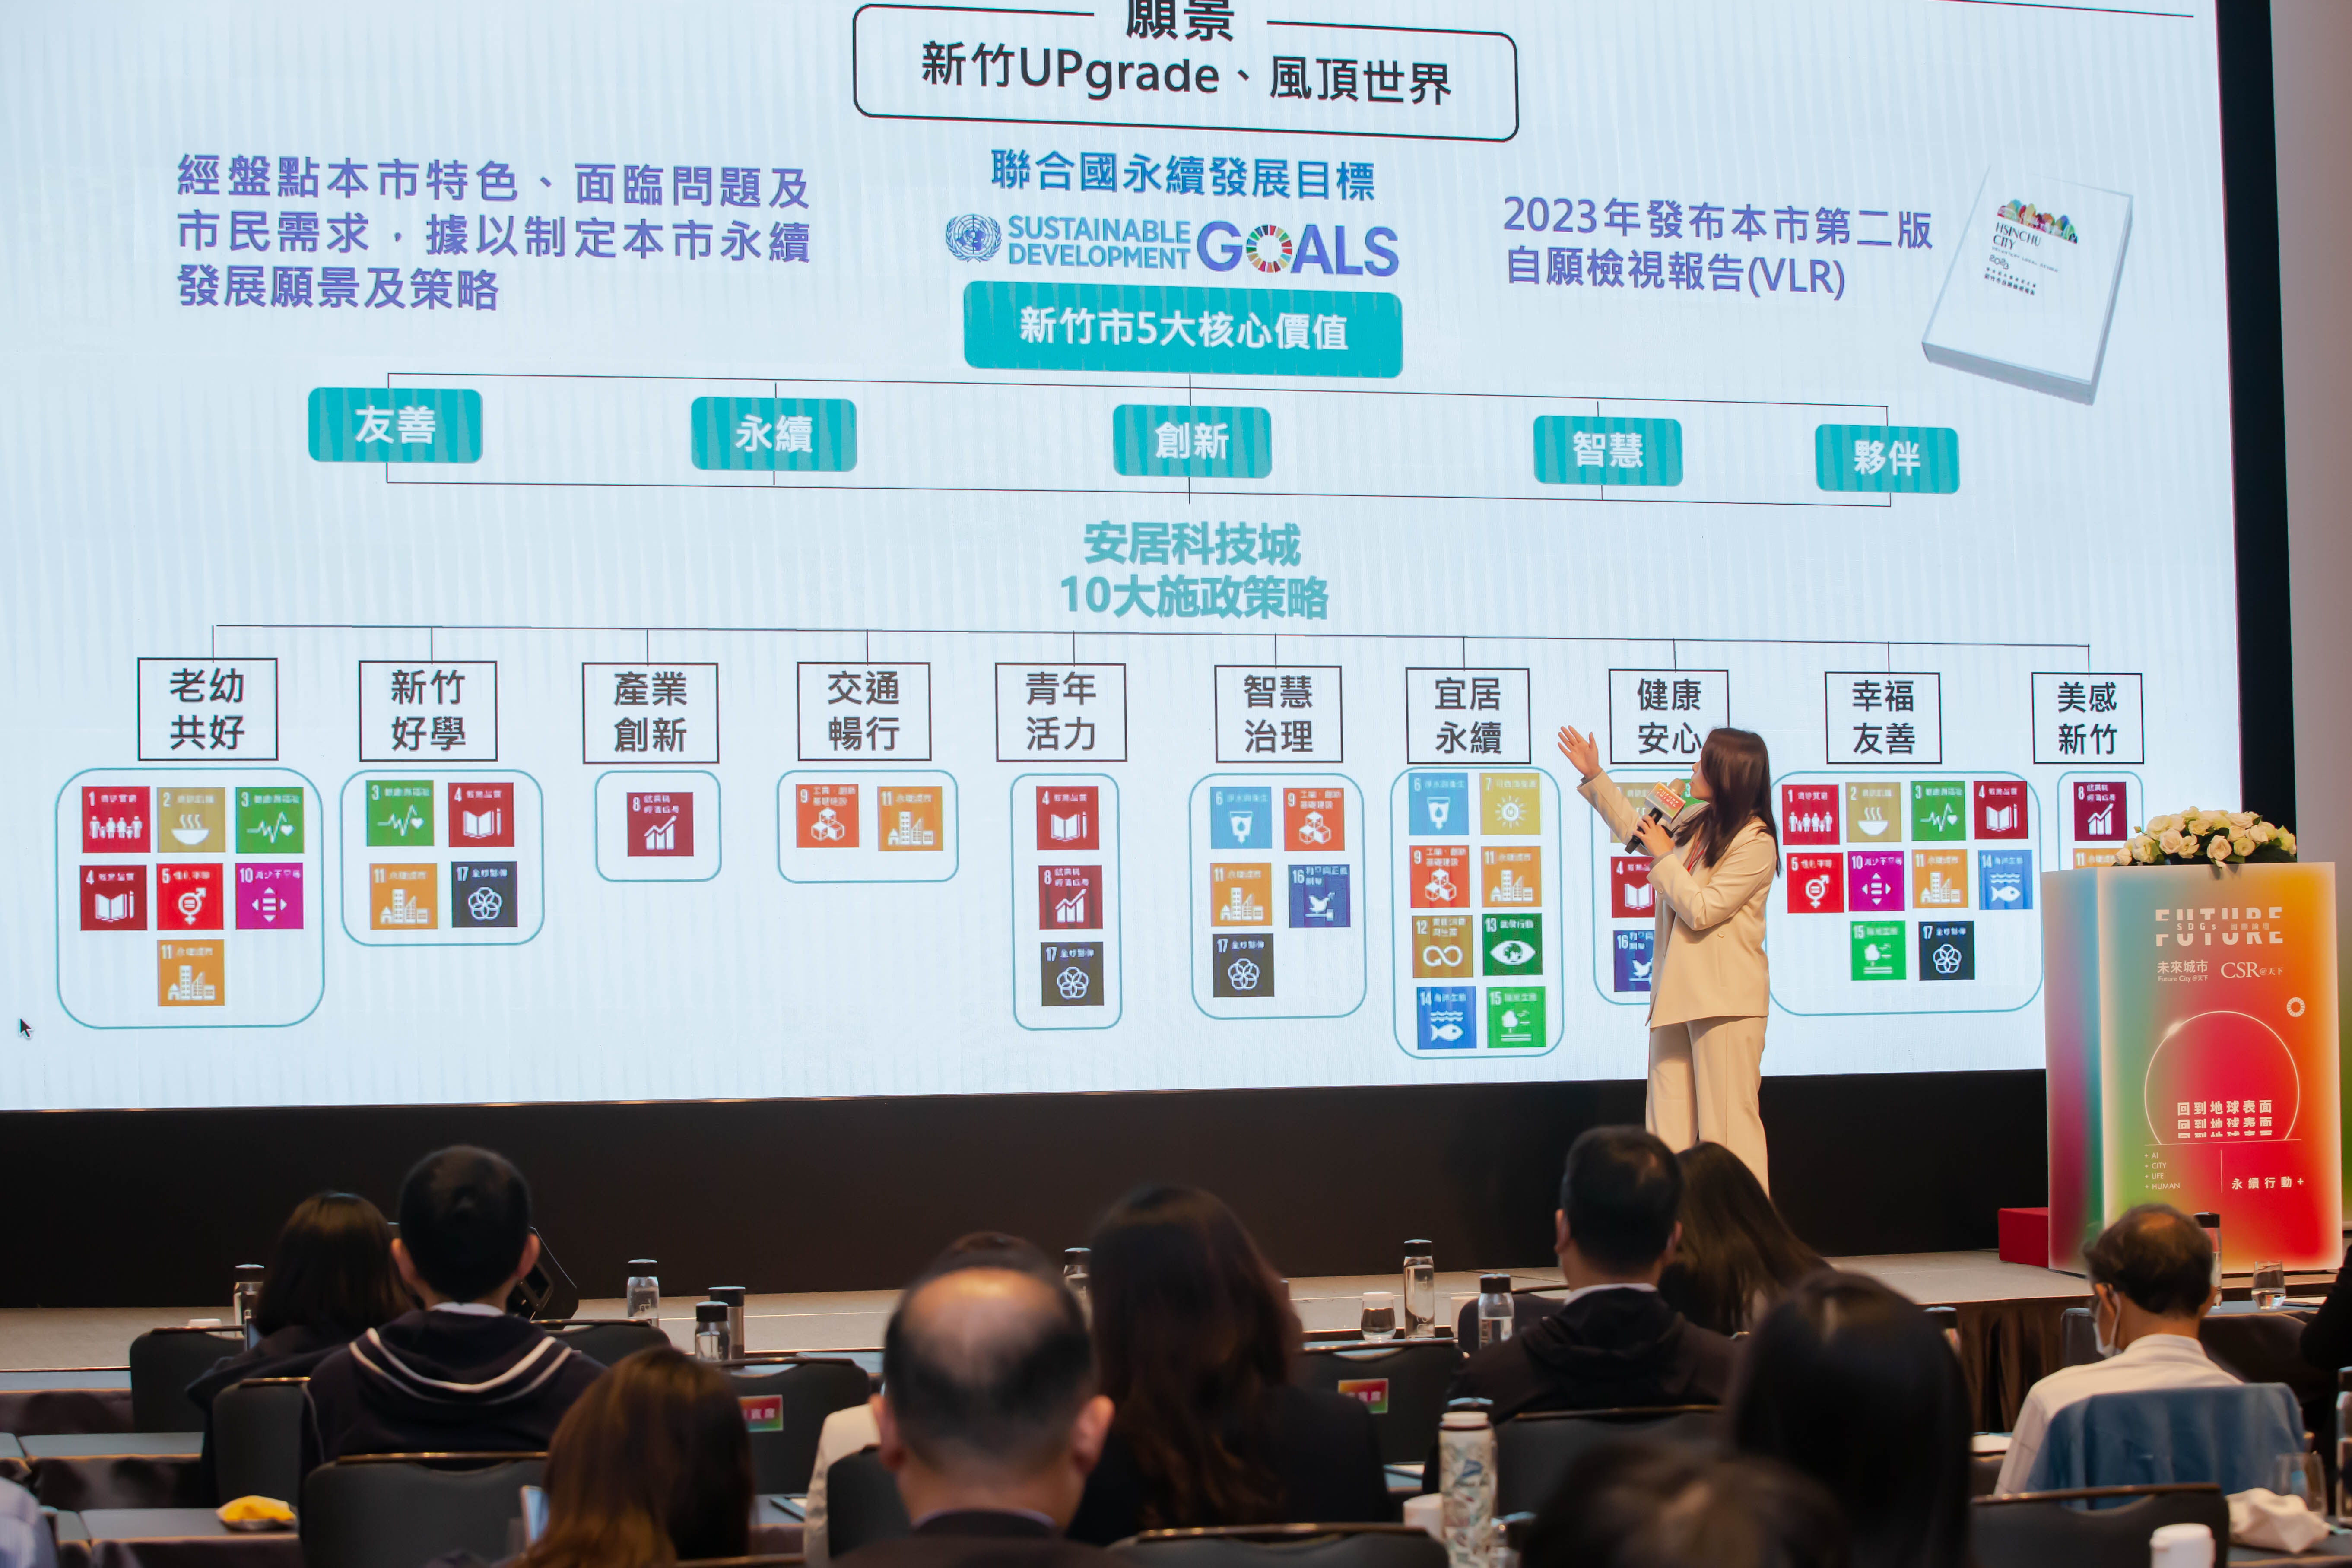 天下雜誌SDGs國際論壇 高市長分享竹市永續發展與公私協力成功實例小圖共6張，pic2